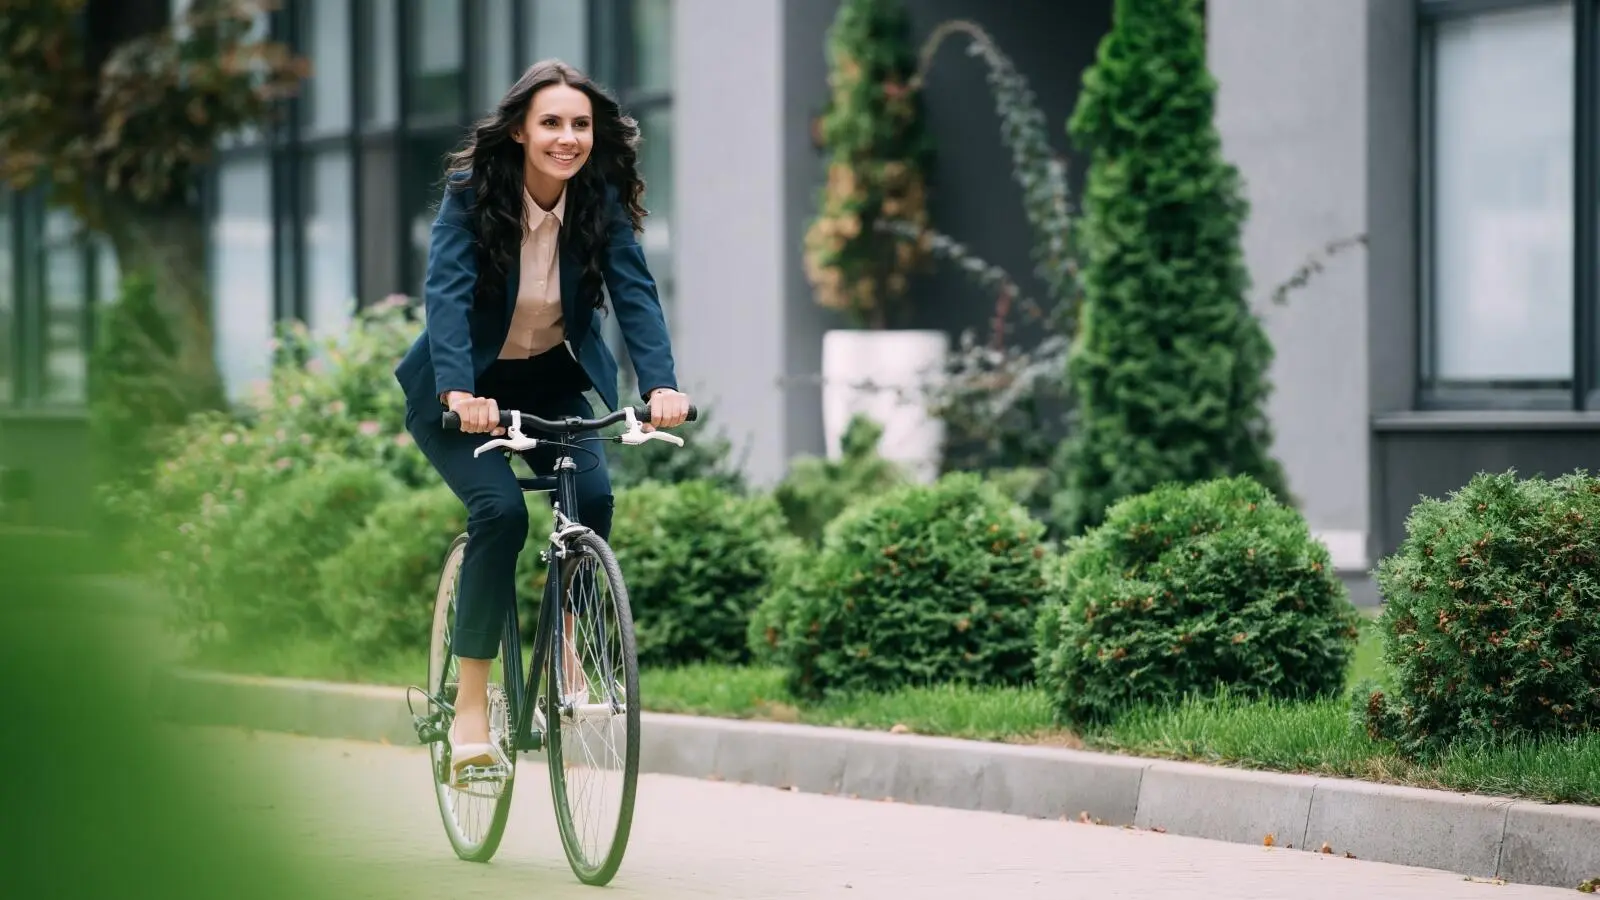 ركوب الدراجة ي وسيلة كثير من سكان الدول الأوربية للوصول إلى أماكن عملهم أو جامعاتهم